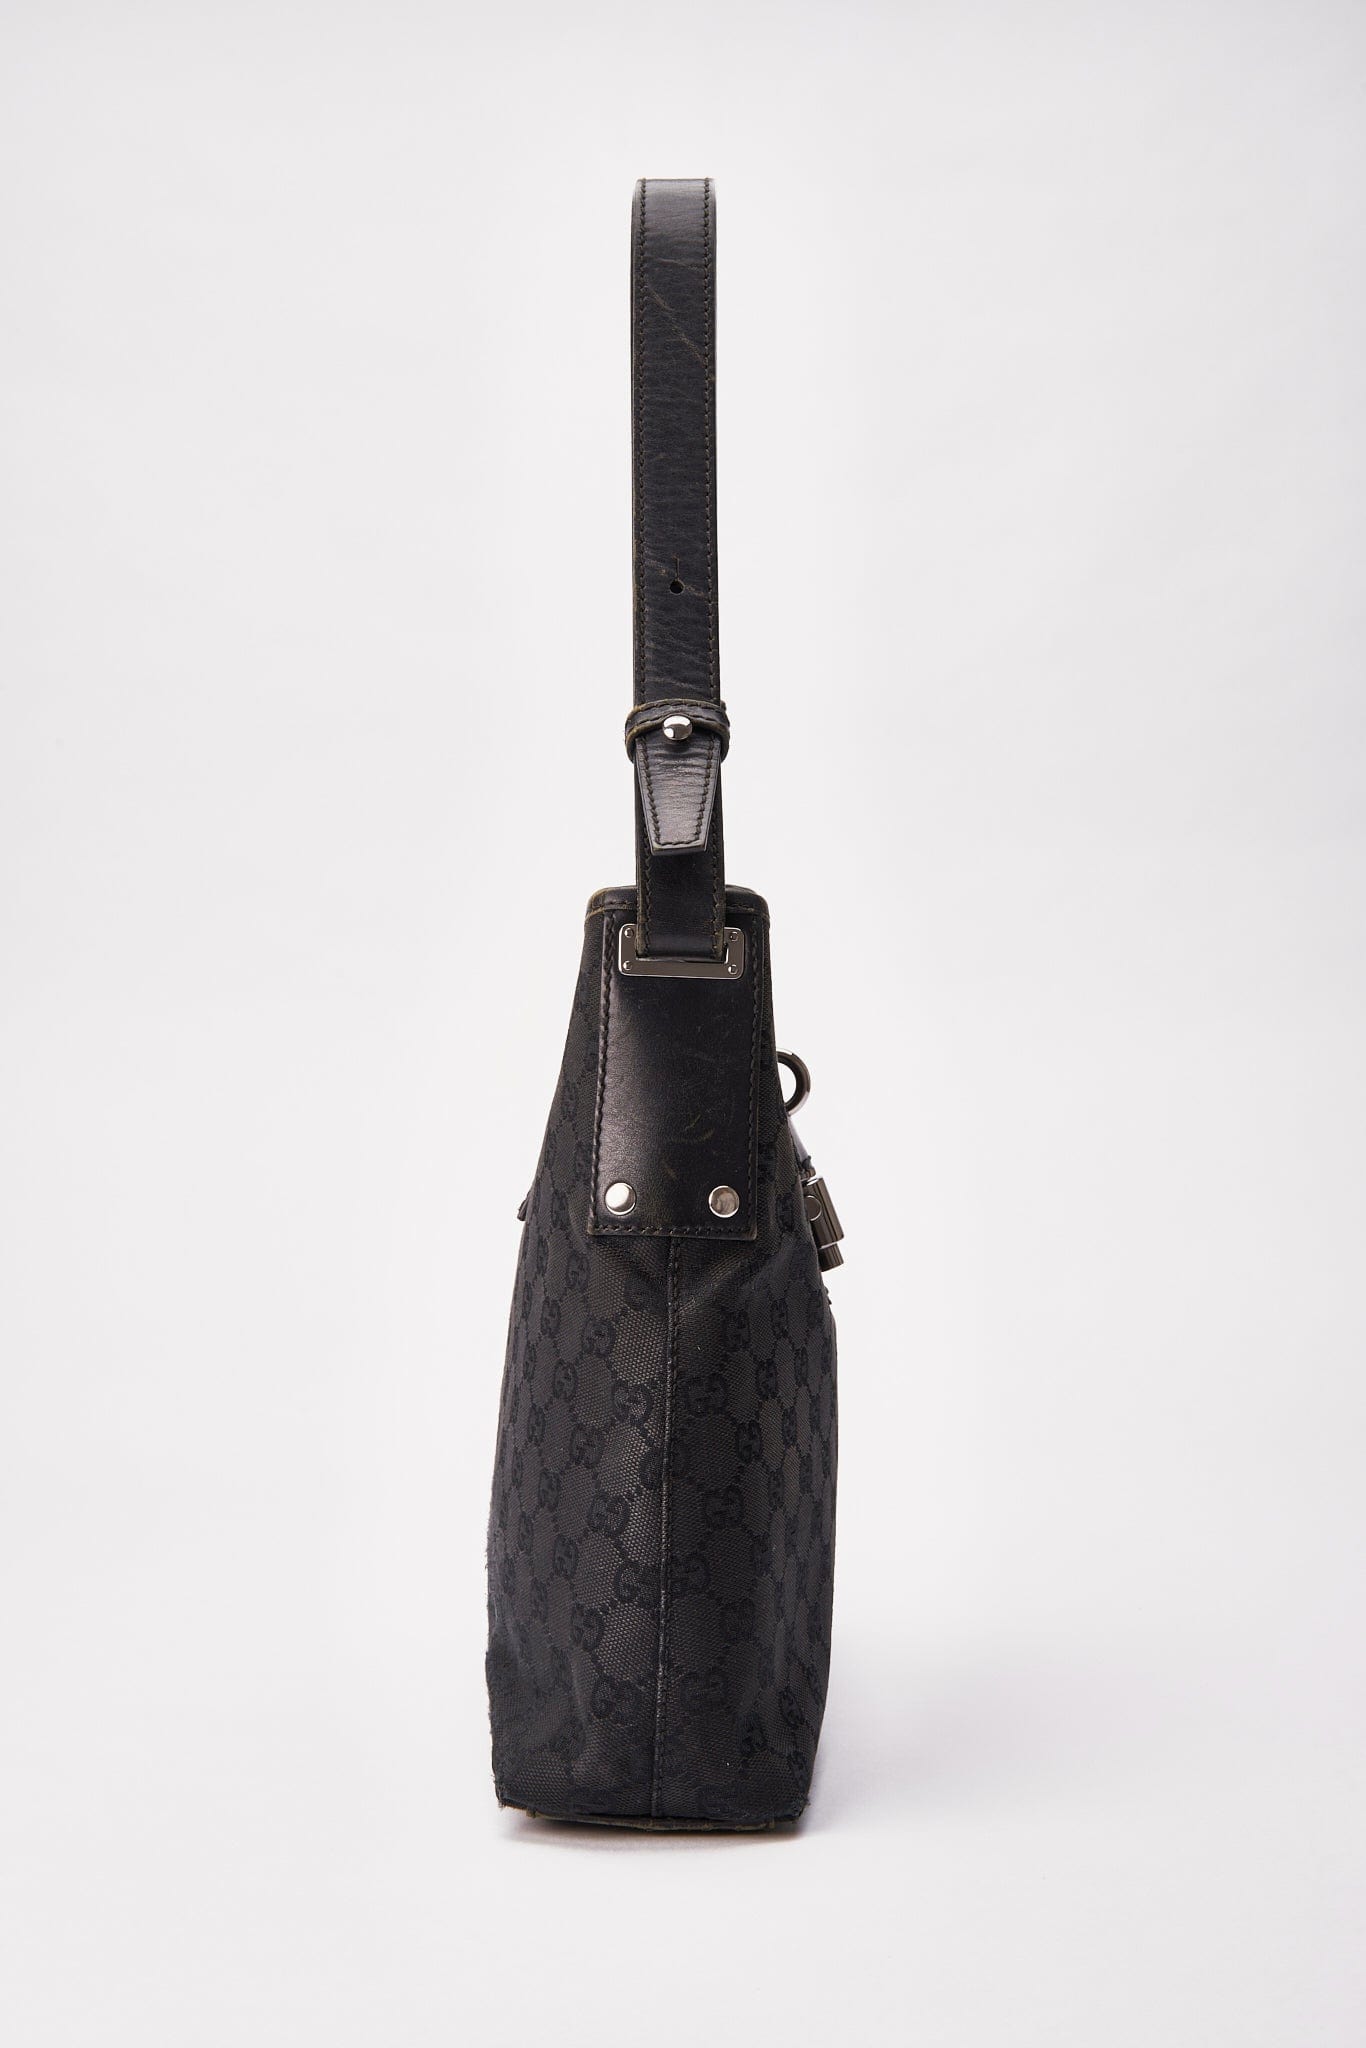 Vintage Gucci Black Shoulder Bag with Pistol Lock